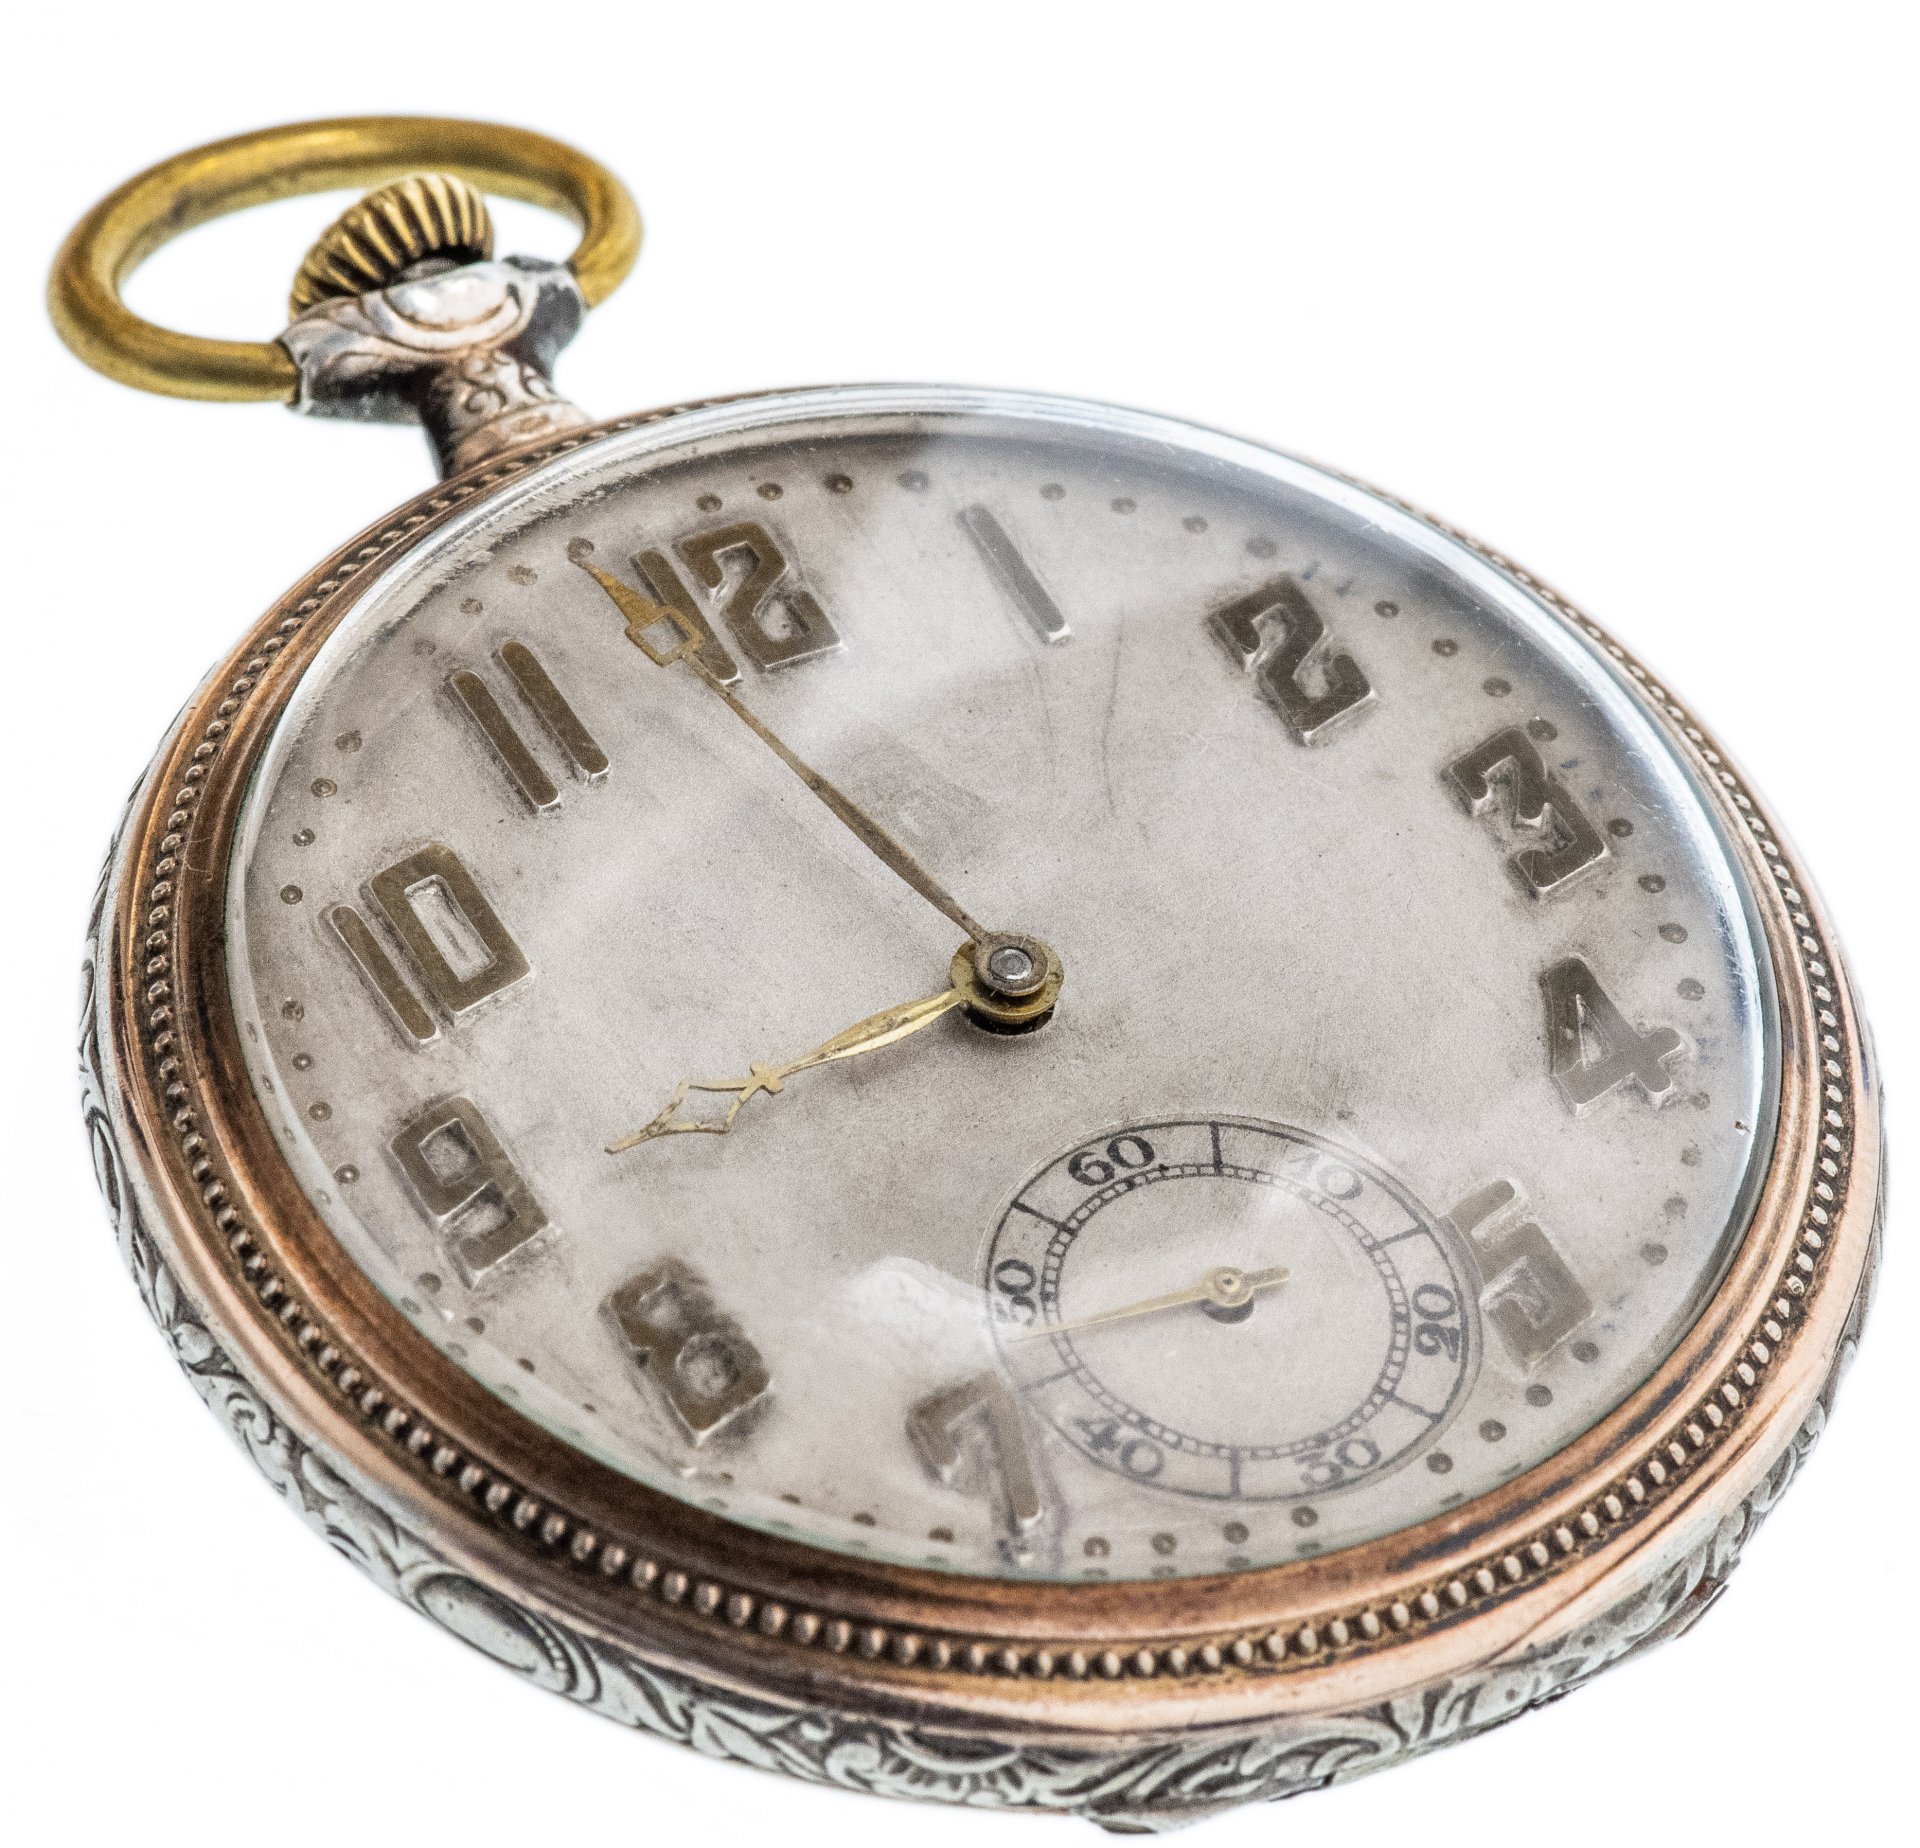 Карманные часы серебро. Швейцарские карманные часы серебро Gallonne. Карманные часы Galonne Швейцария. Часы карманные швейцарские Galonne серебро 0.800 проба. Часы Galonne карманные серебряные.